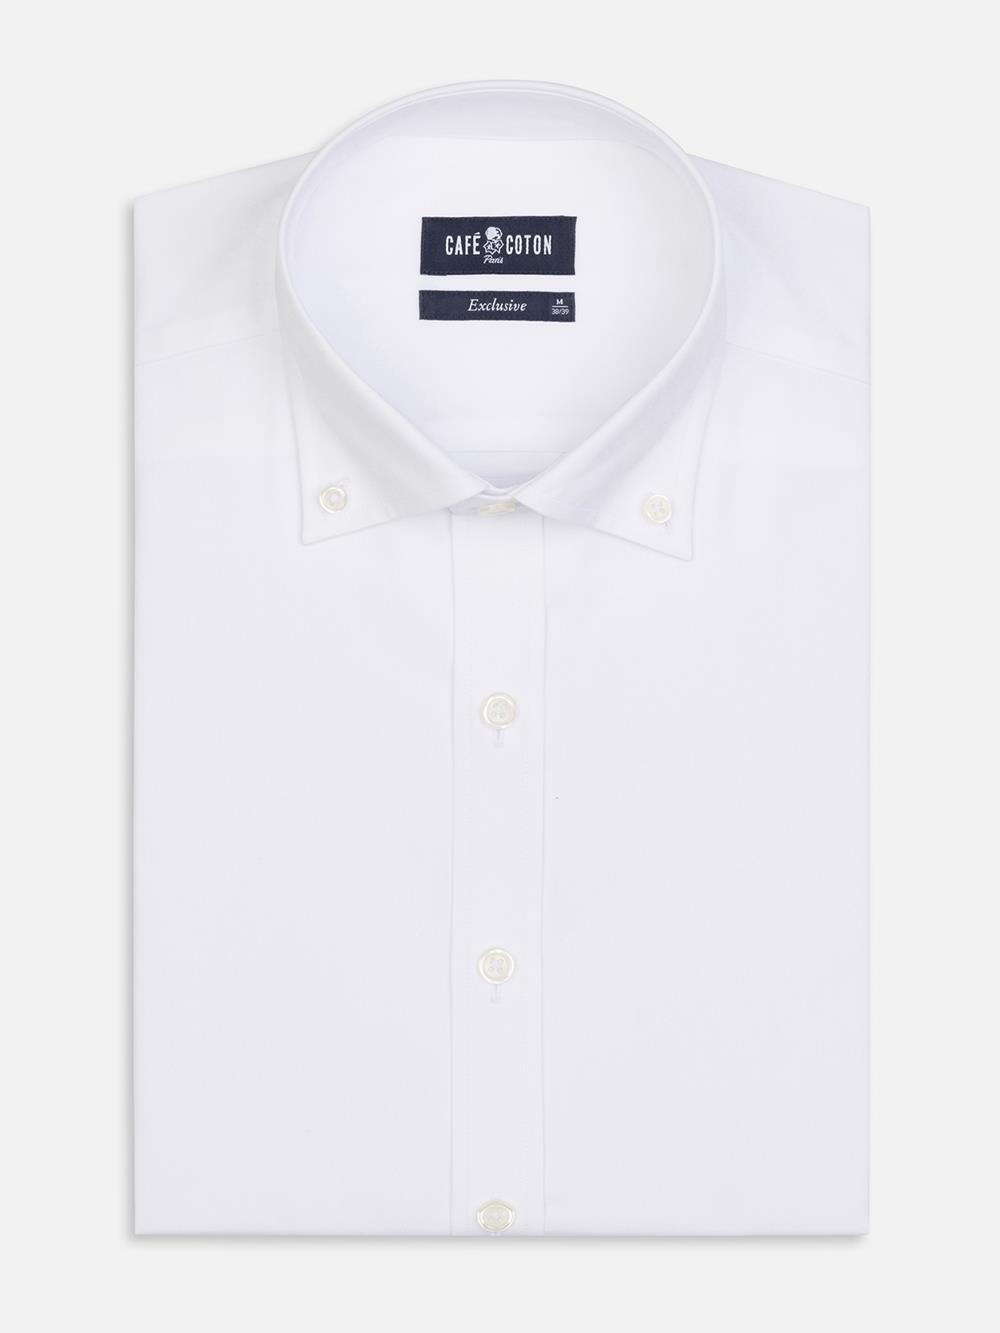 Tailliertes Tailliertes Hemd aus Pin Point weiß - Buttondown Kragen